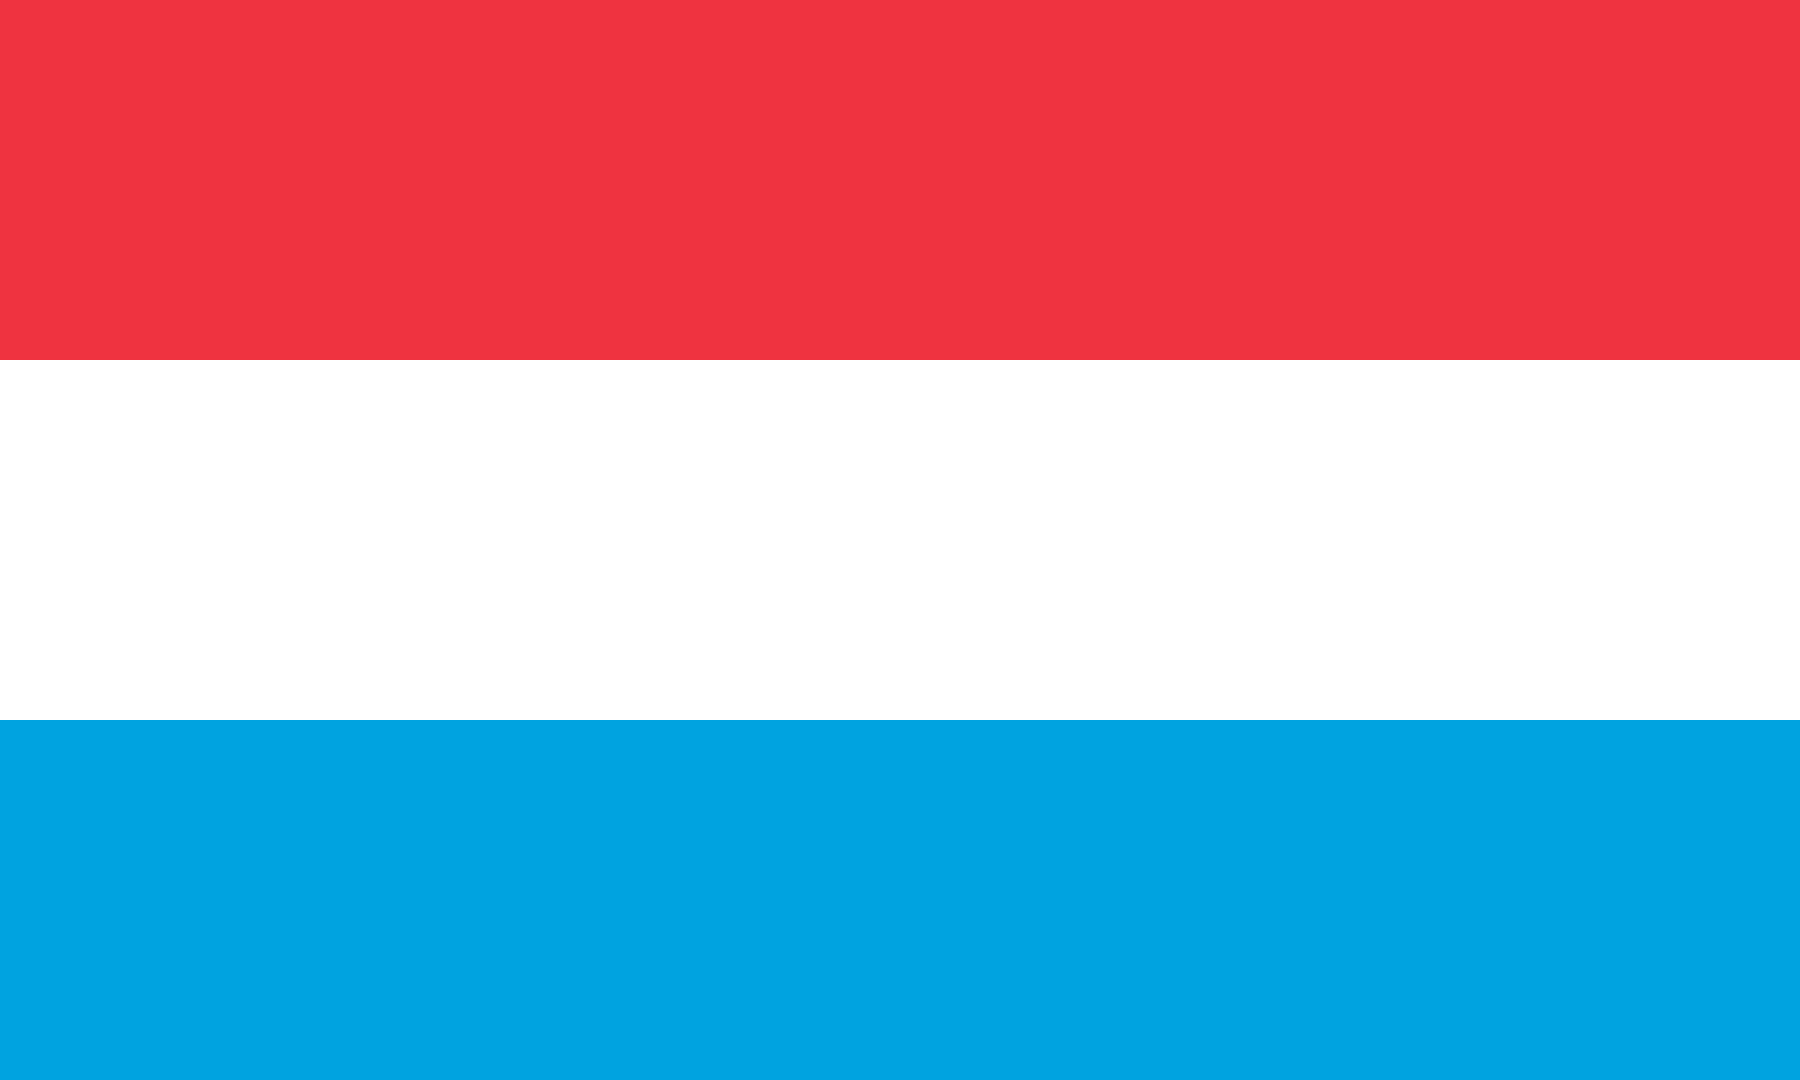 Люксембург - самая богатая страна ЕС по уровню ВВП на душу населения